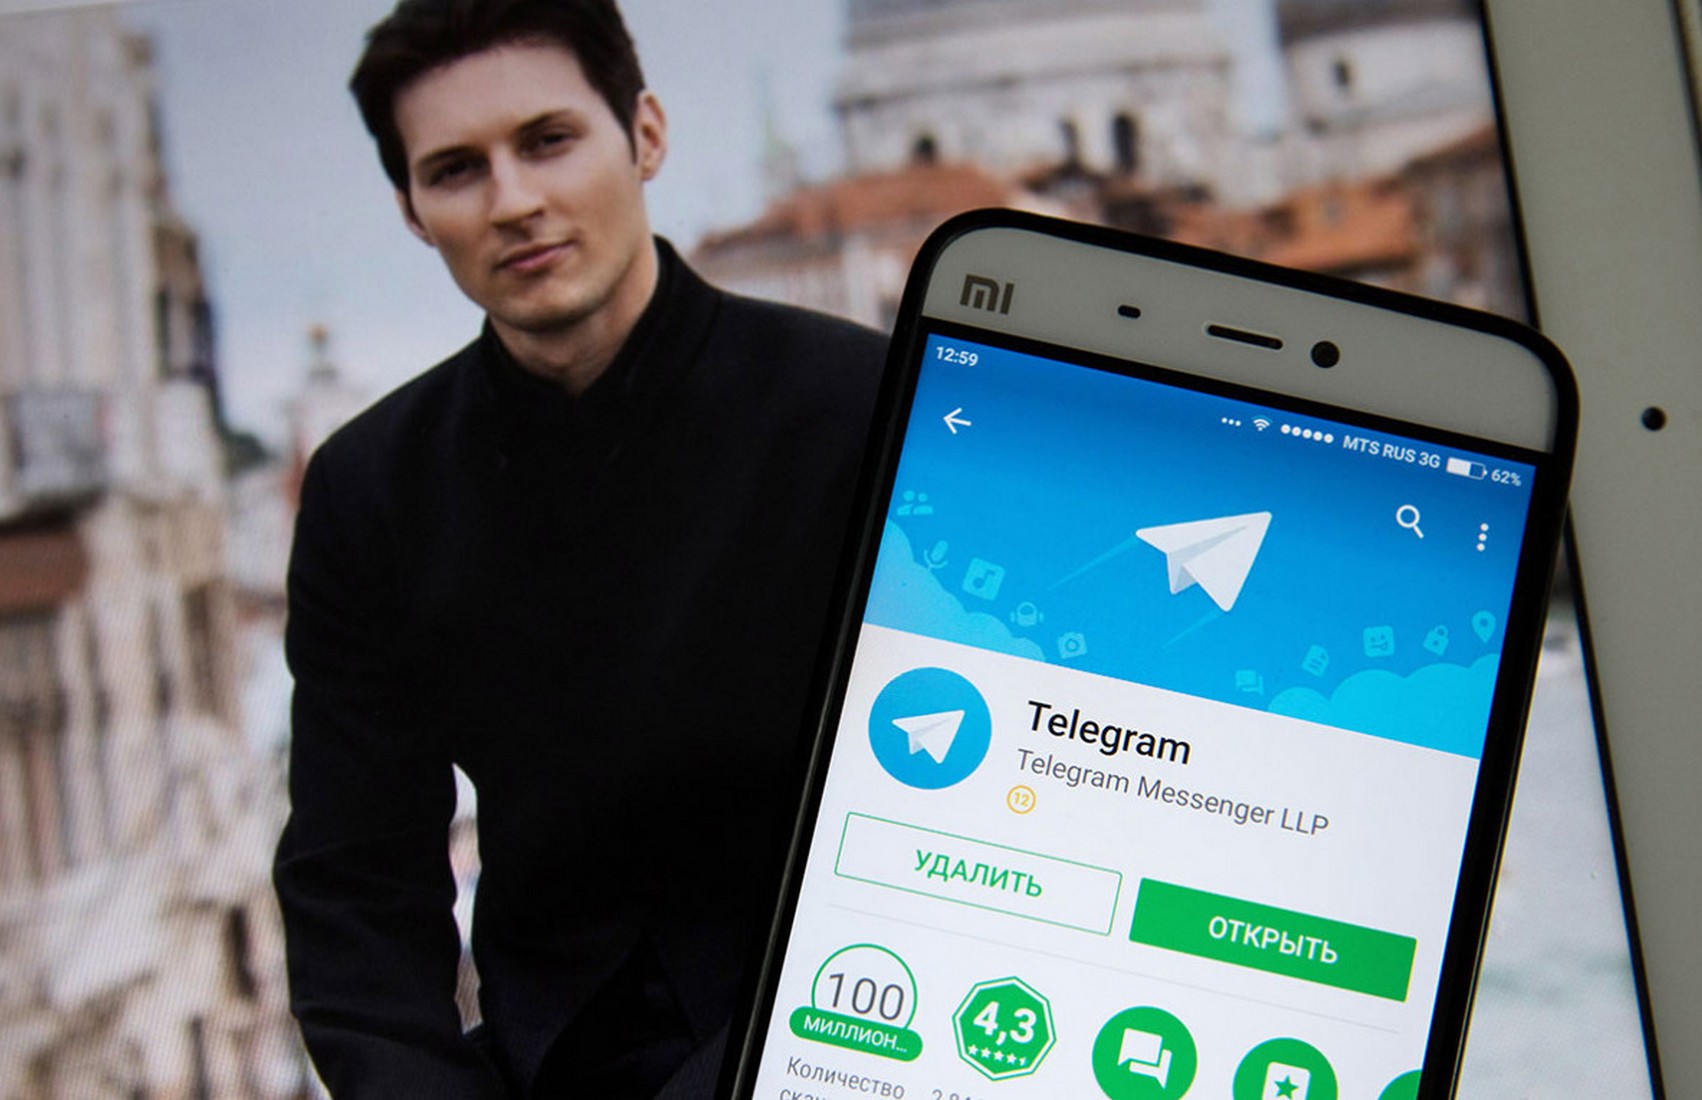 Дуров рассказал, какой будет реклама внутри Telegram